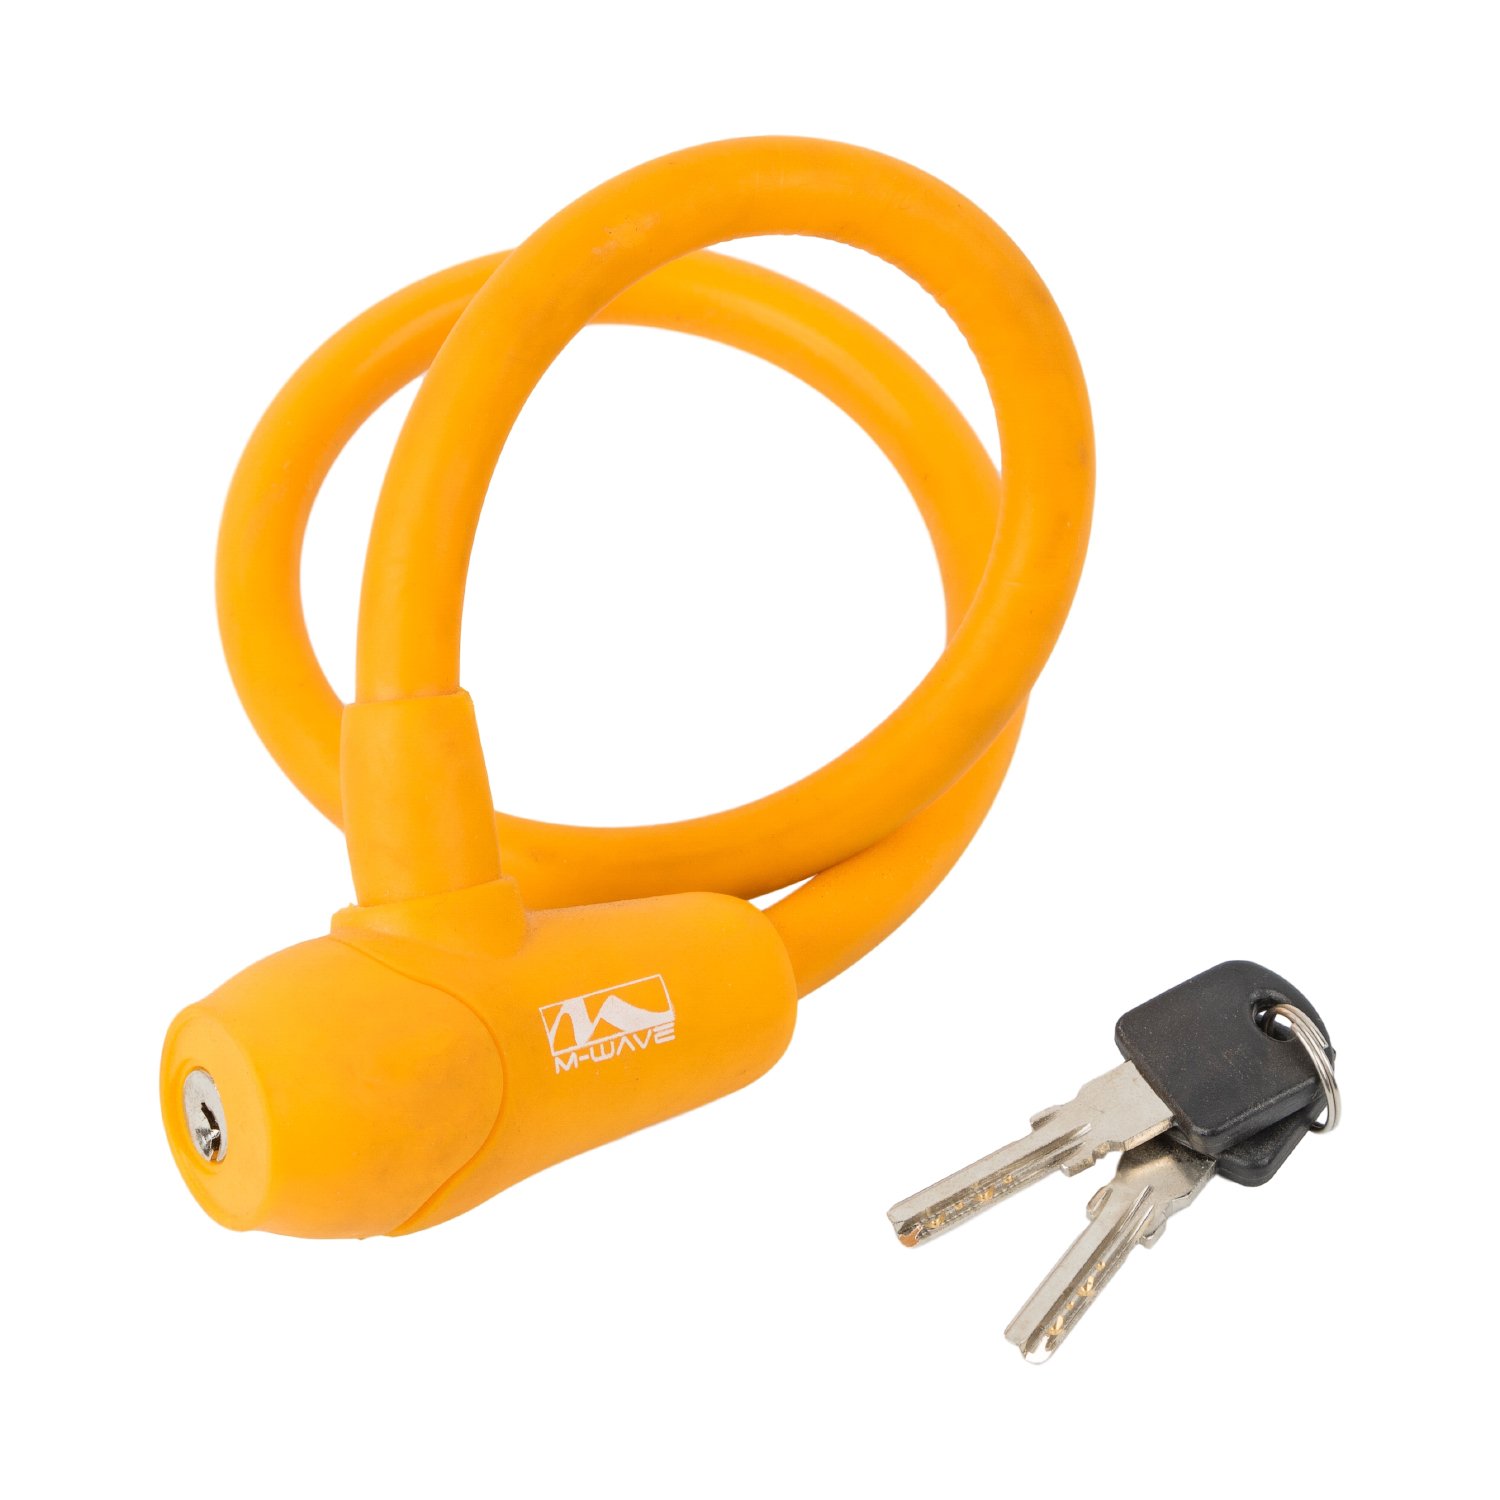 Велосипедный замок M-WAVE, тросовый, на ключ, 12 х 600 мм, оранжевый, 5-231047 панацея